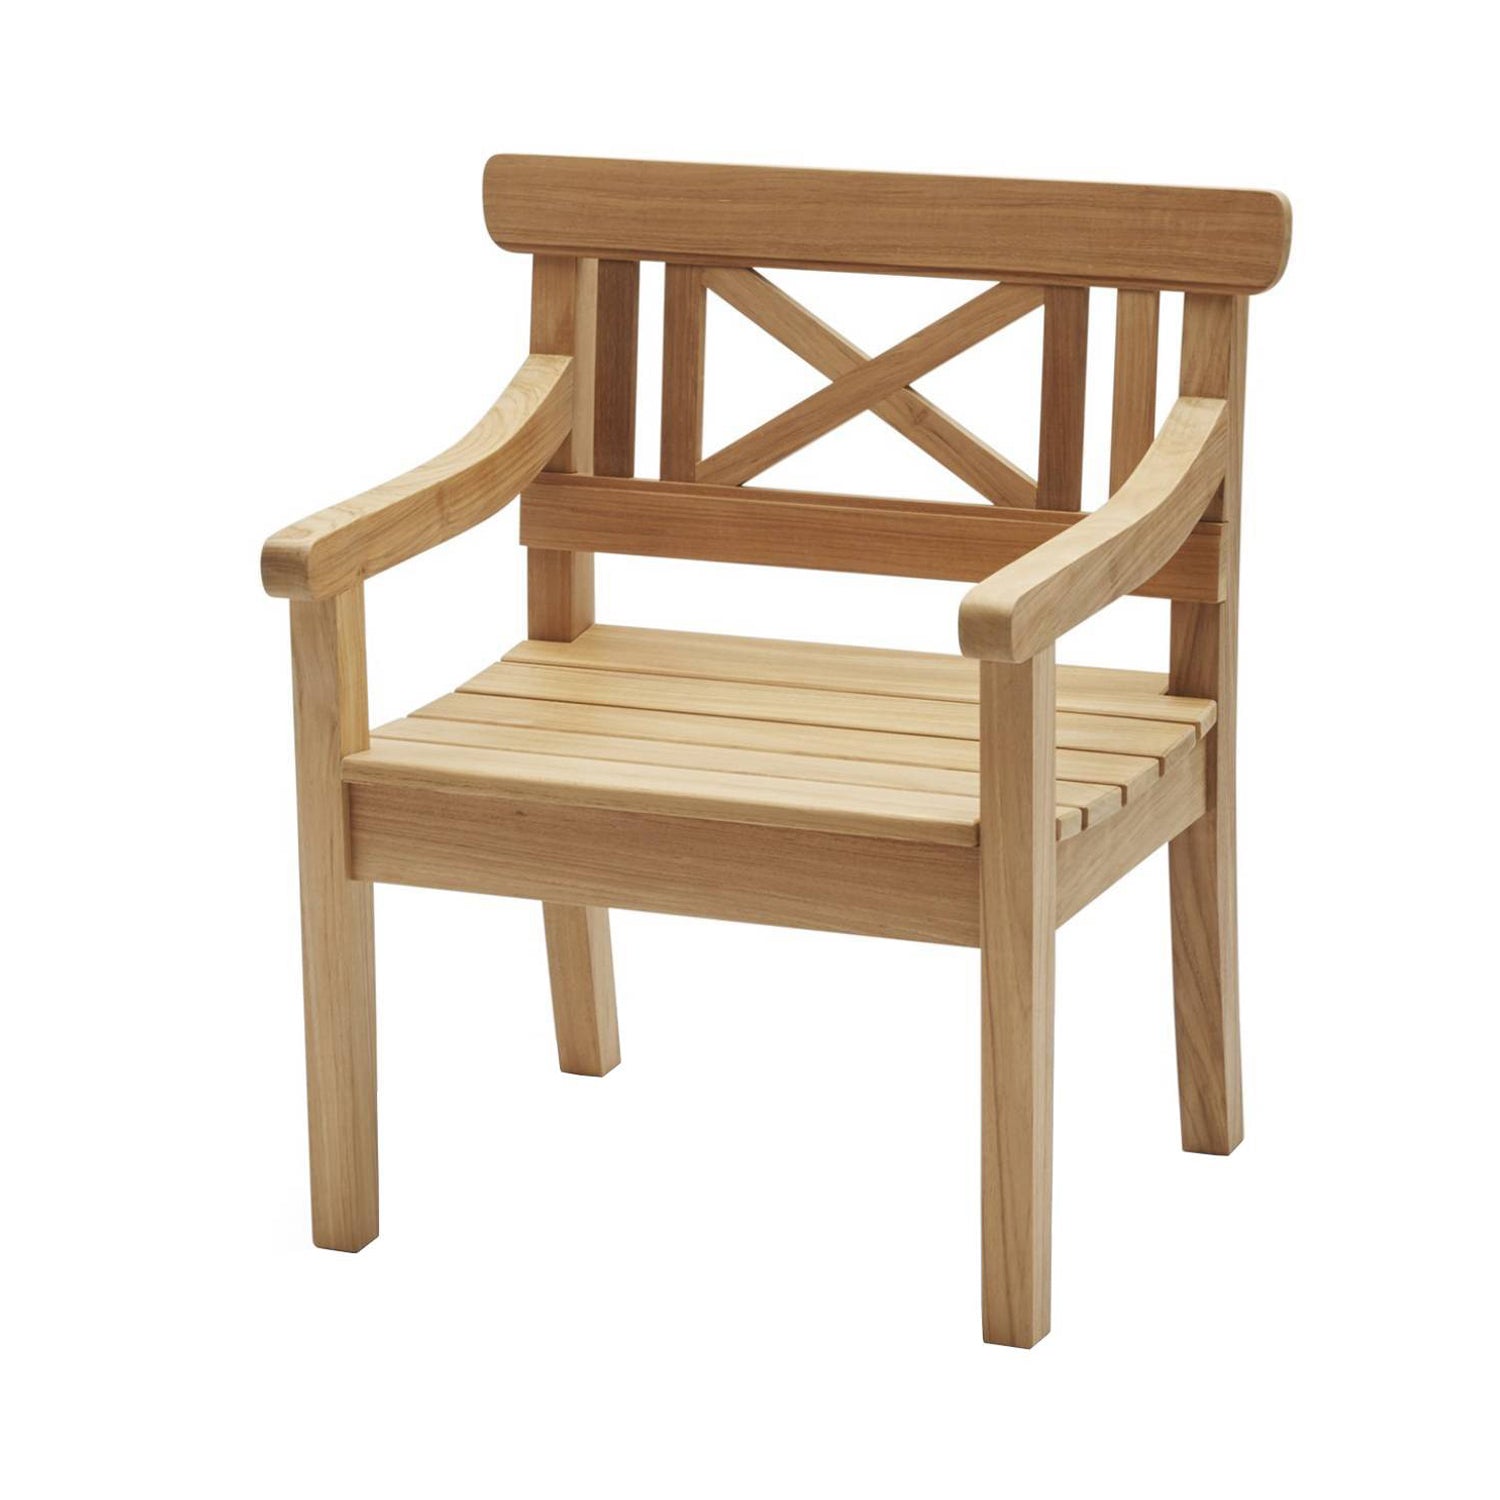 Drachmann Chair: Without Cushion